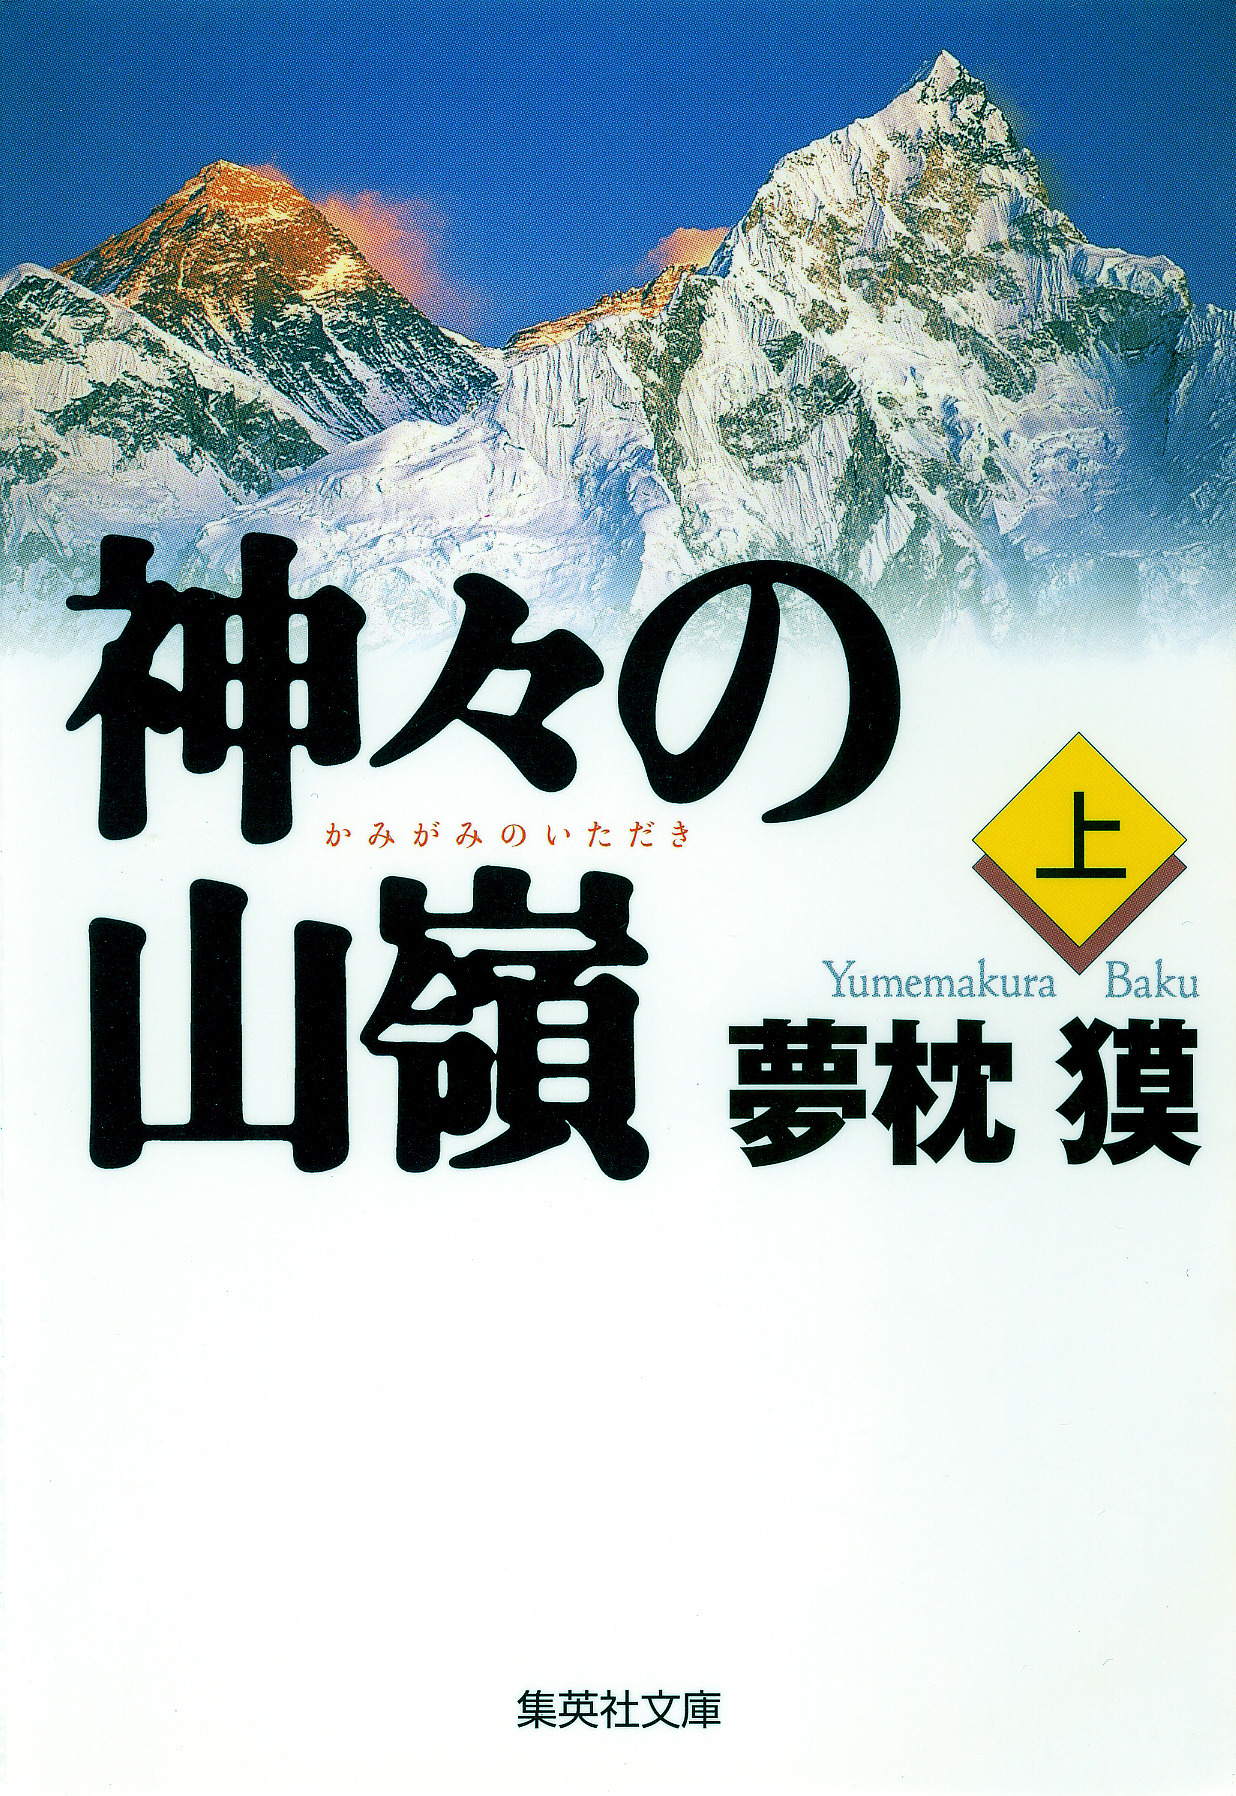 夢枕獏の山岳小説 エヴェレスト 神々の山嶺 映画化でkadokawaと集英社が合同企画 Cycle やわらかスポーツ情報サイト